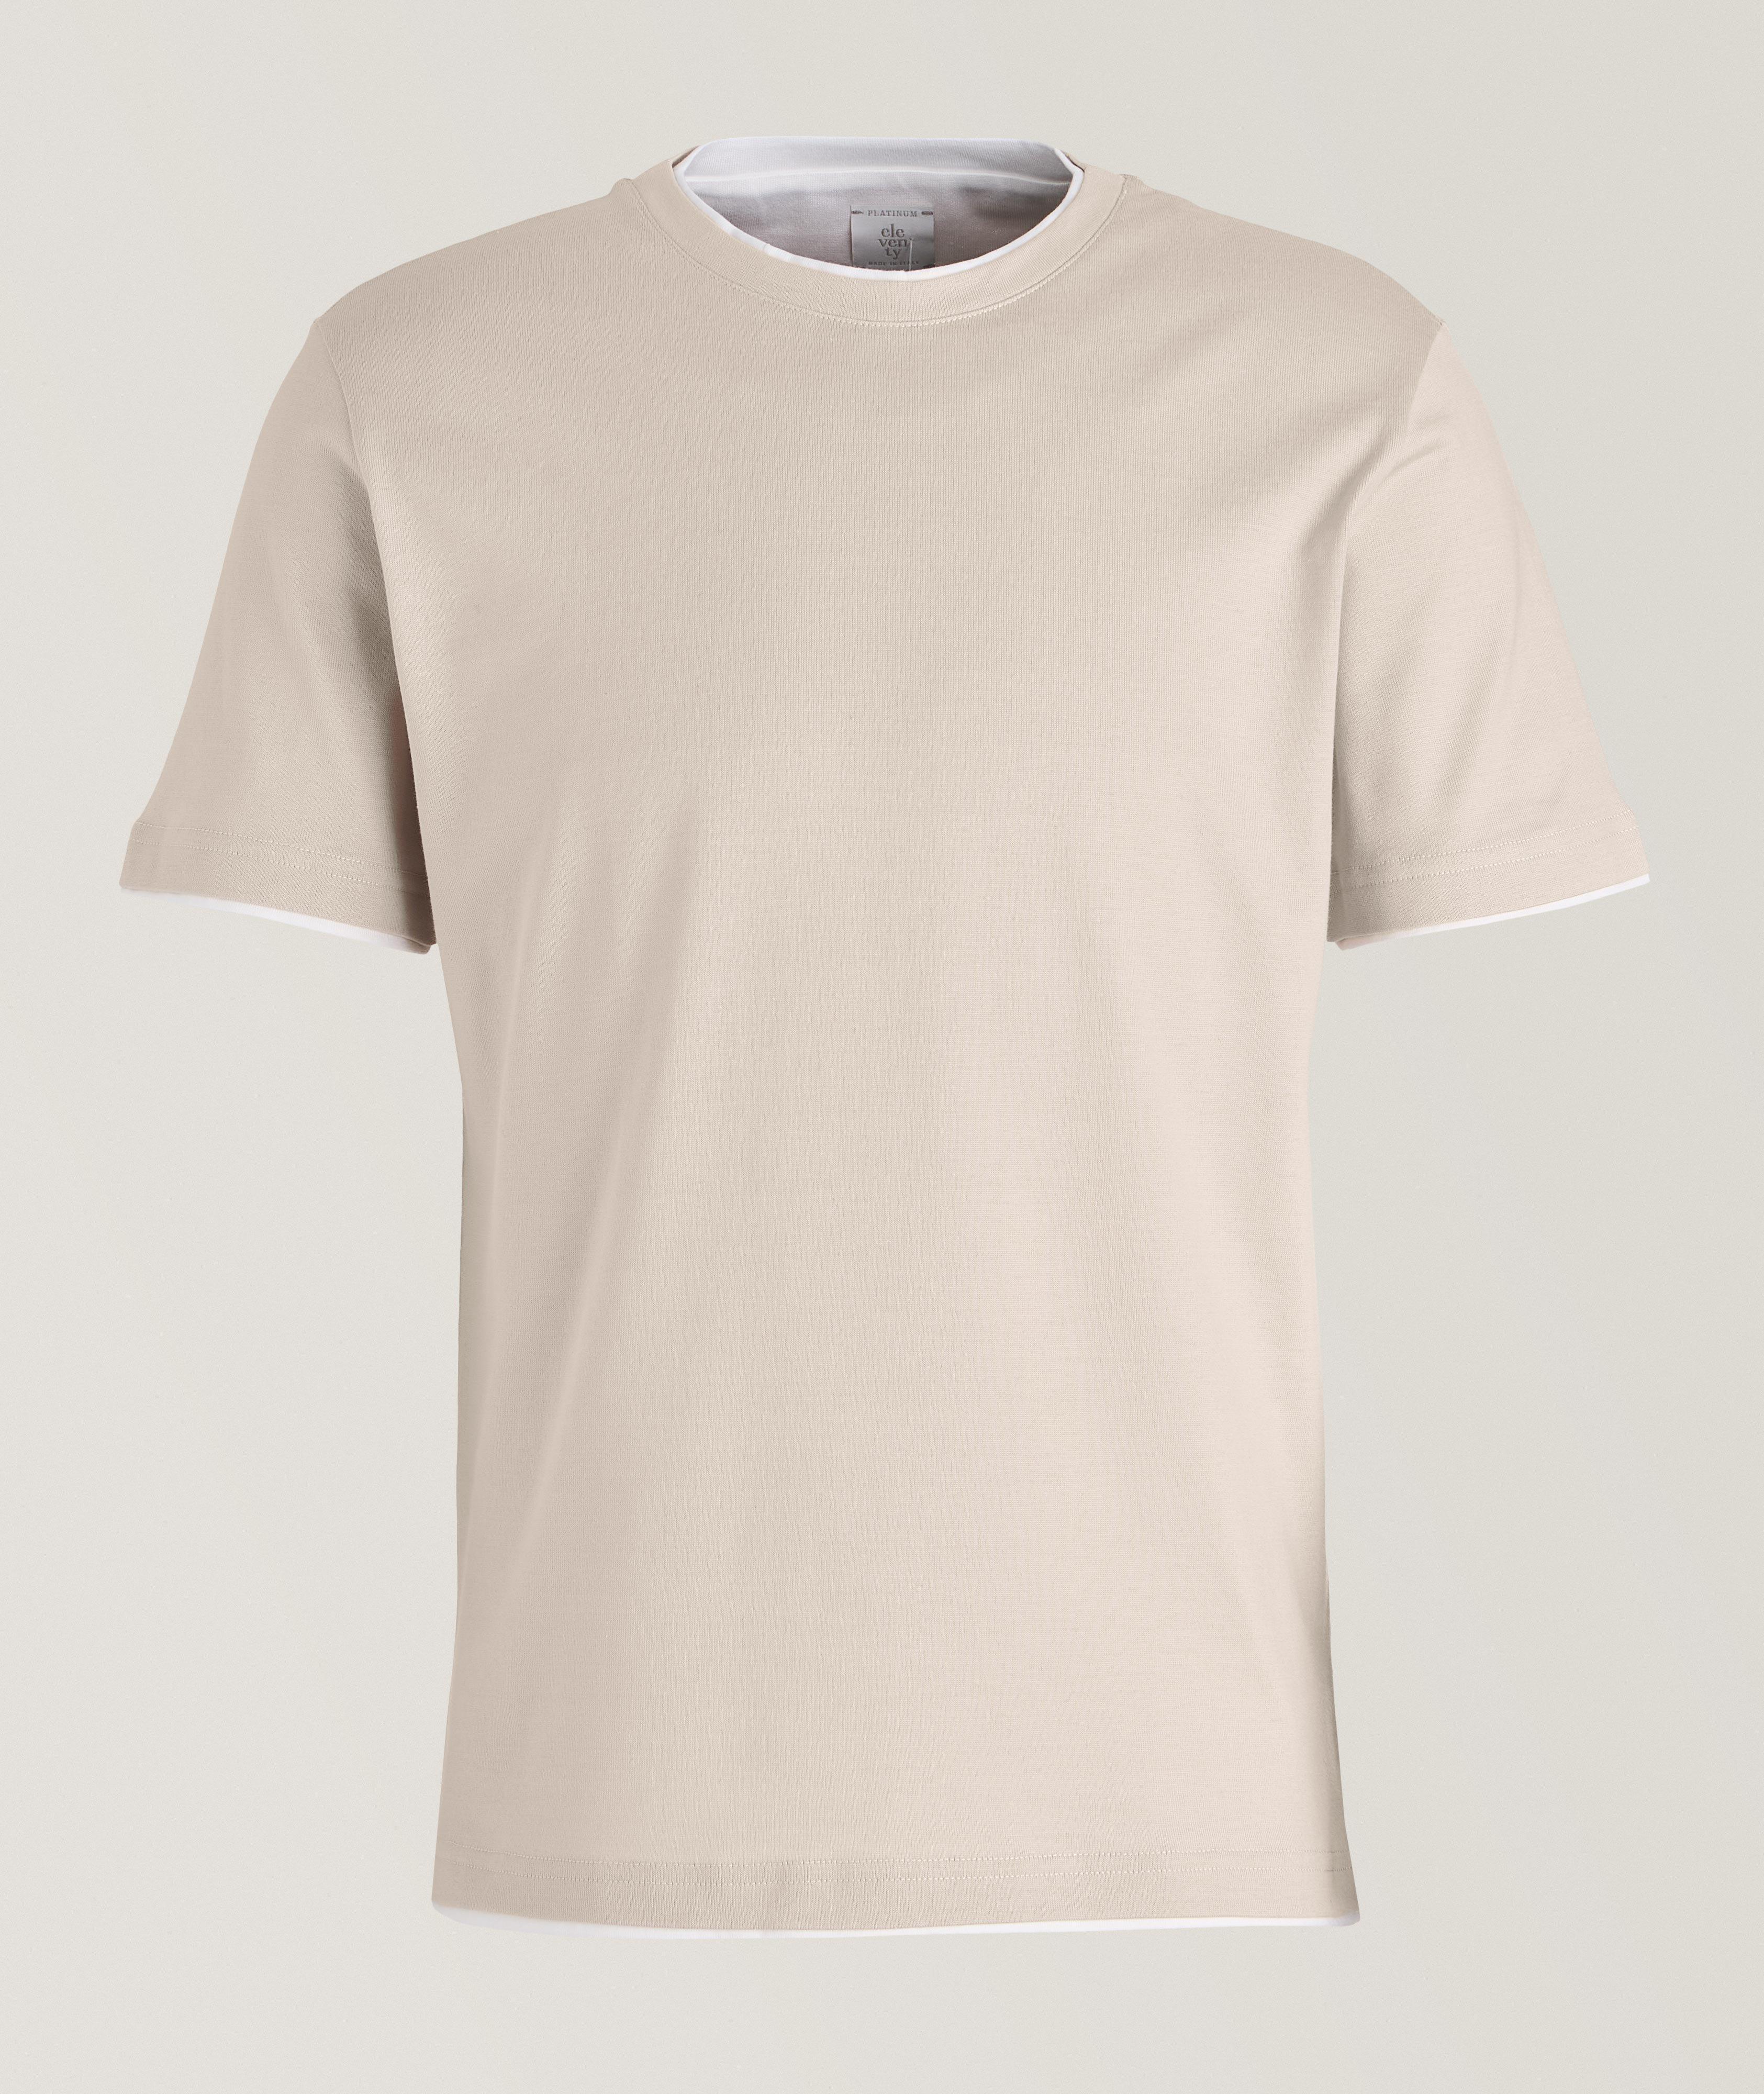 T-shirt en coton, collection platine image 0